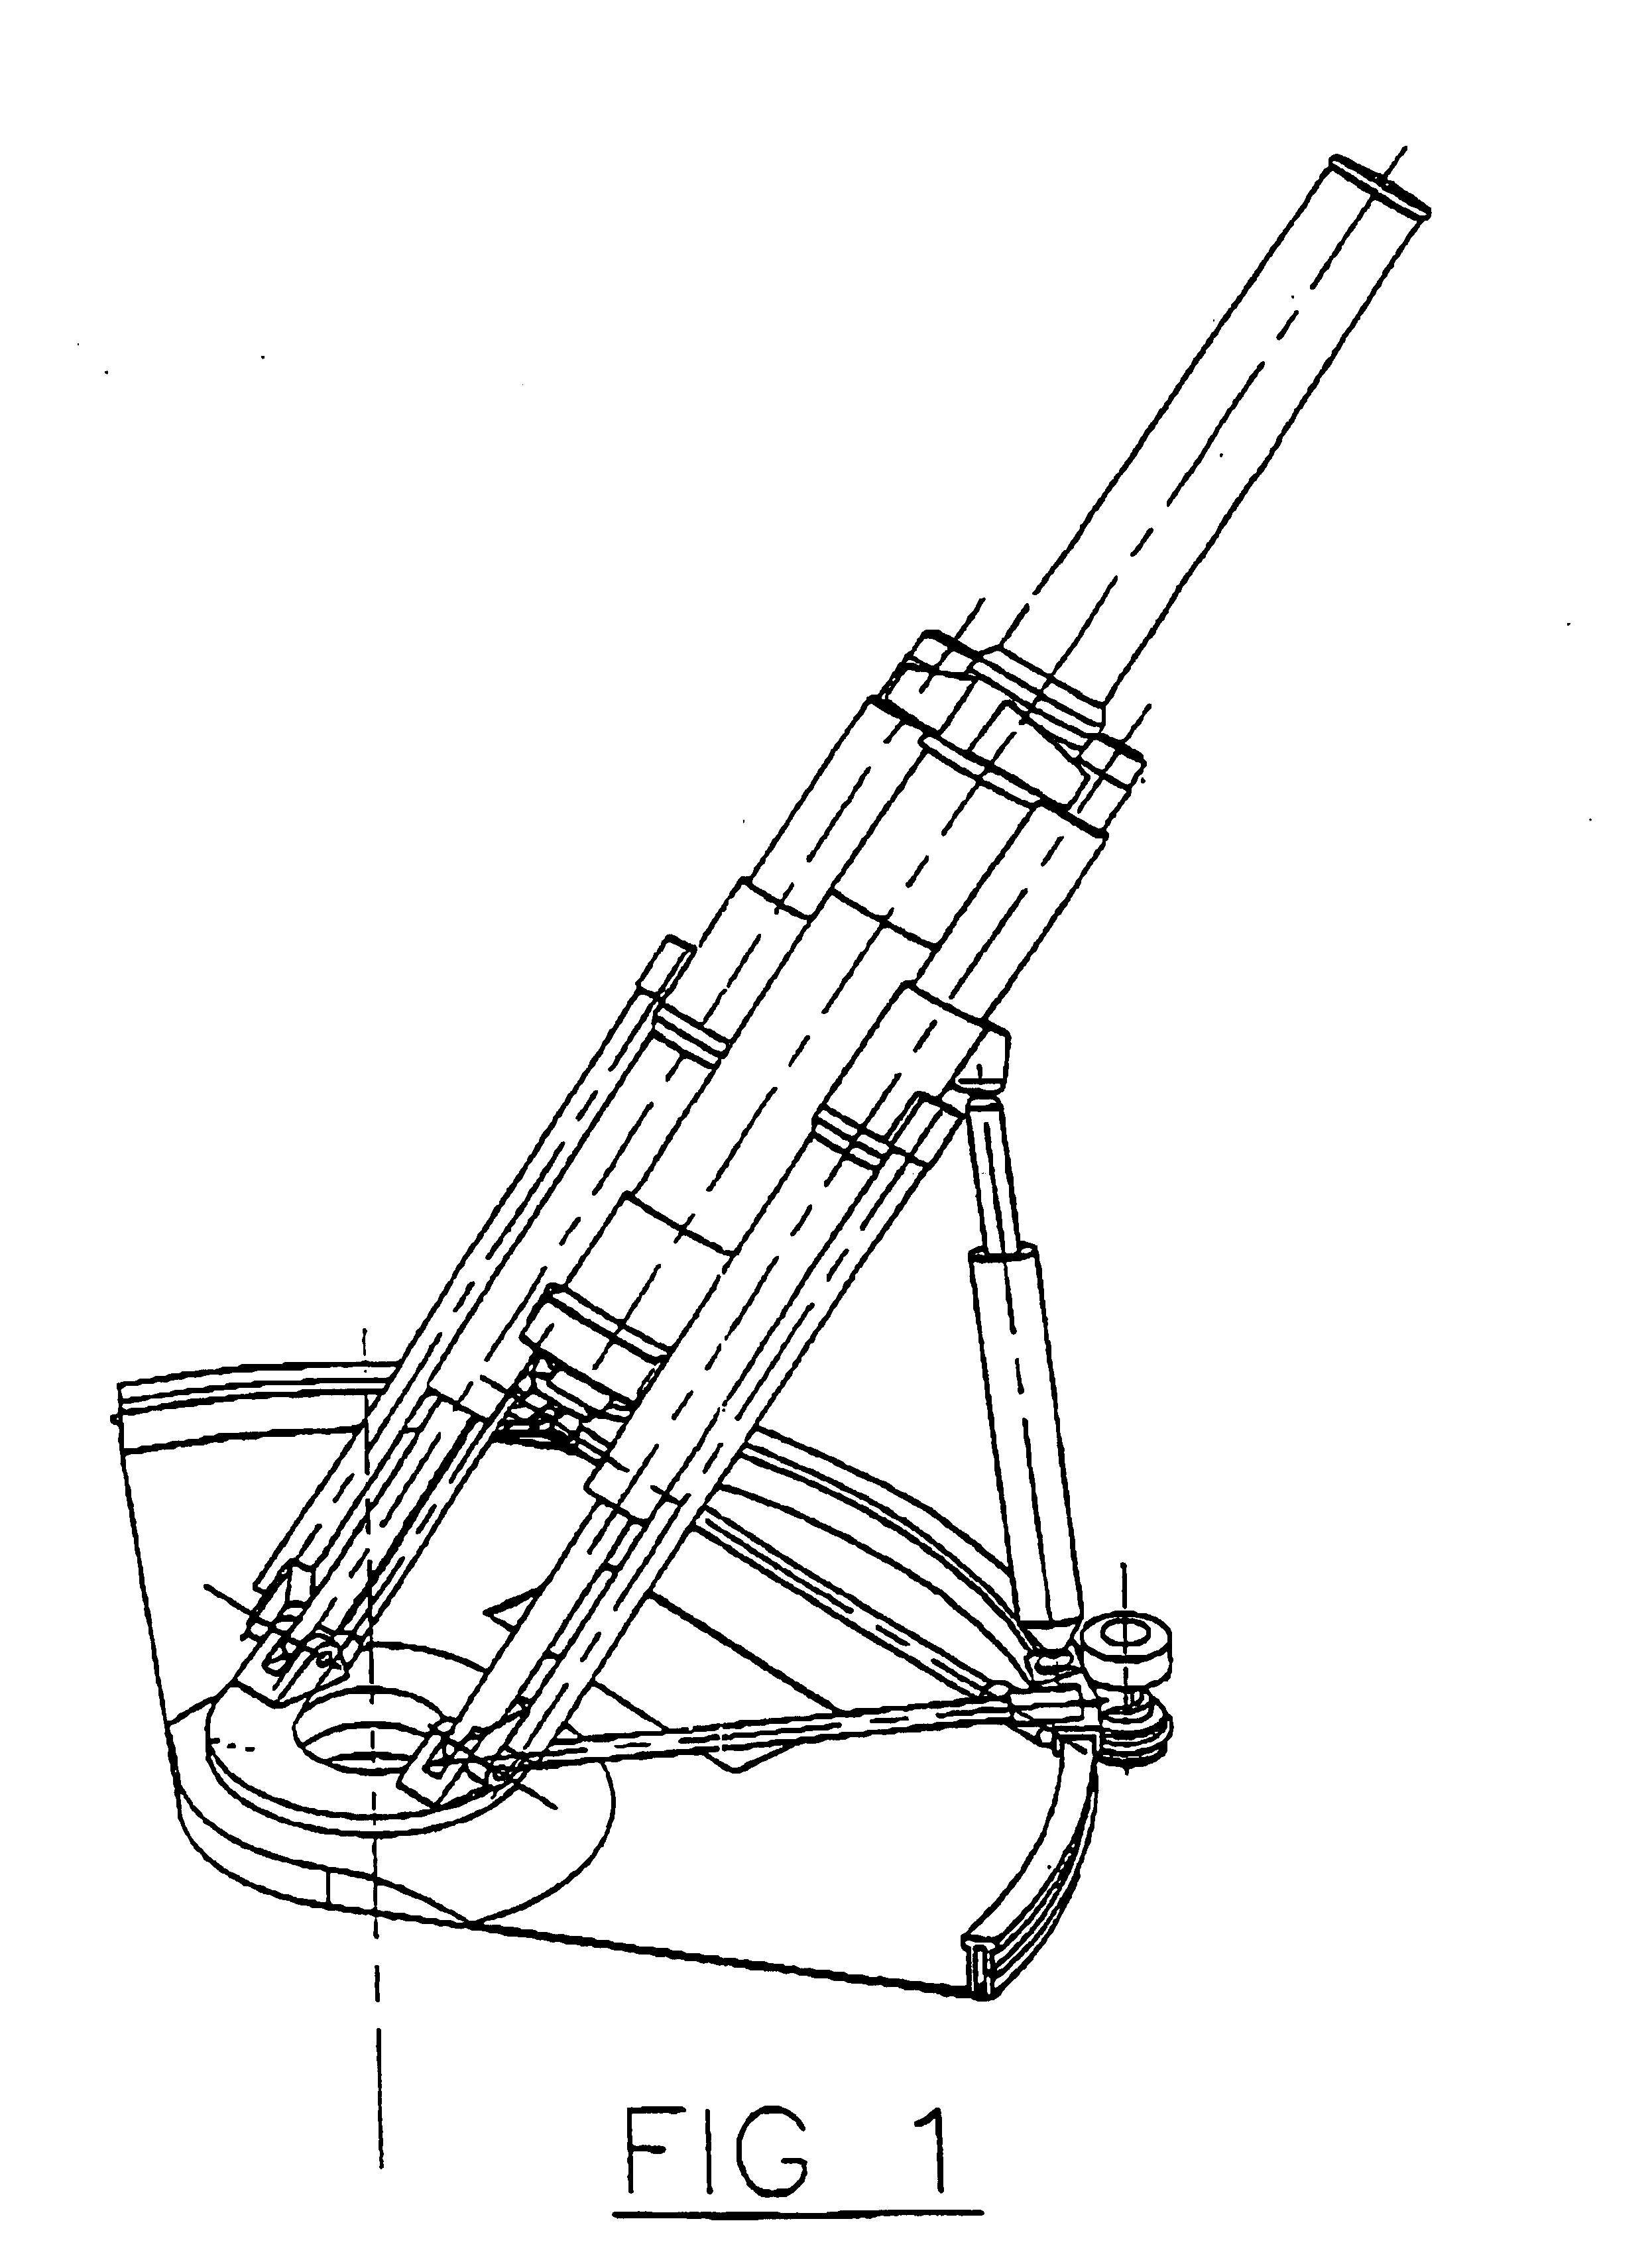 Artillery firing mechanism